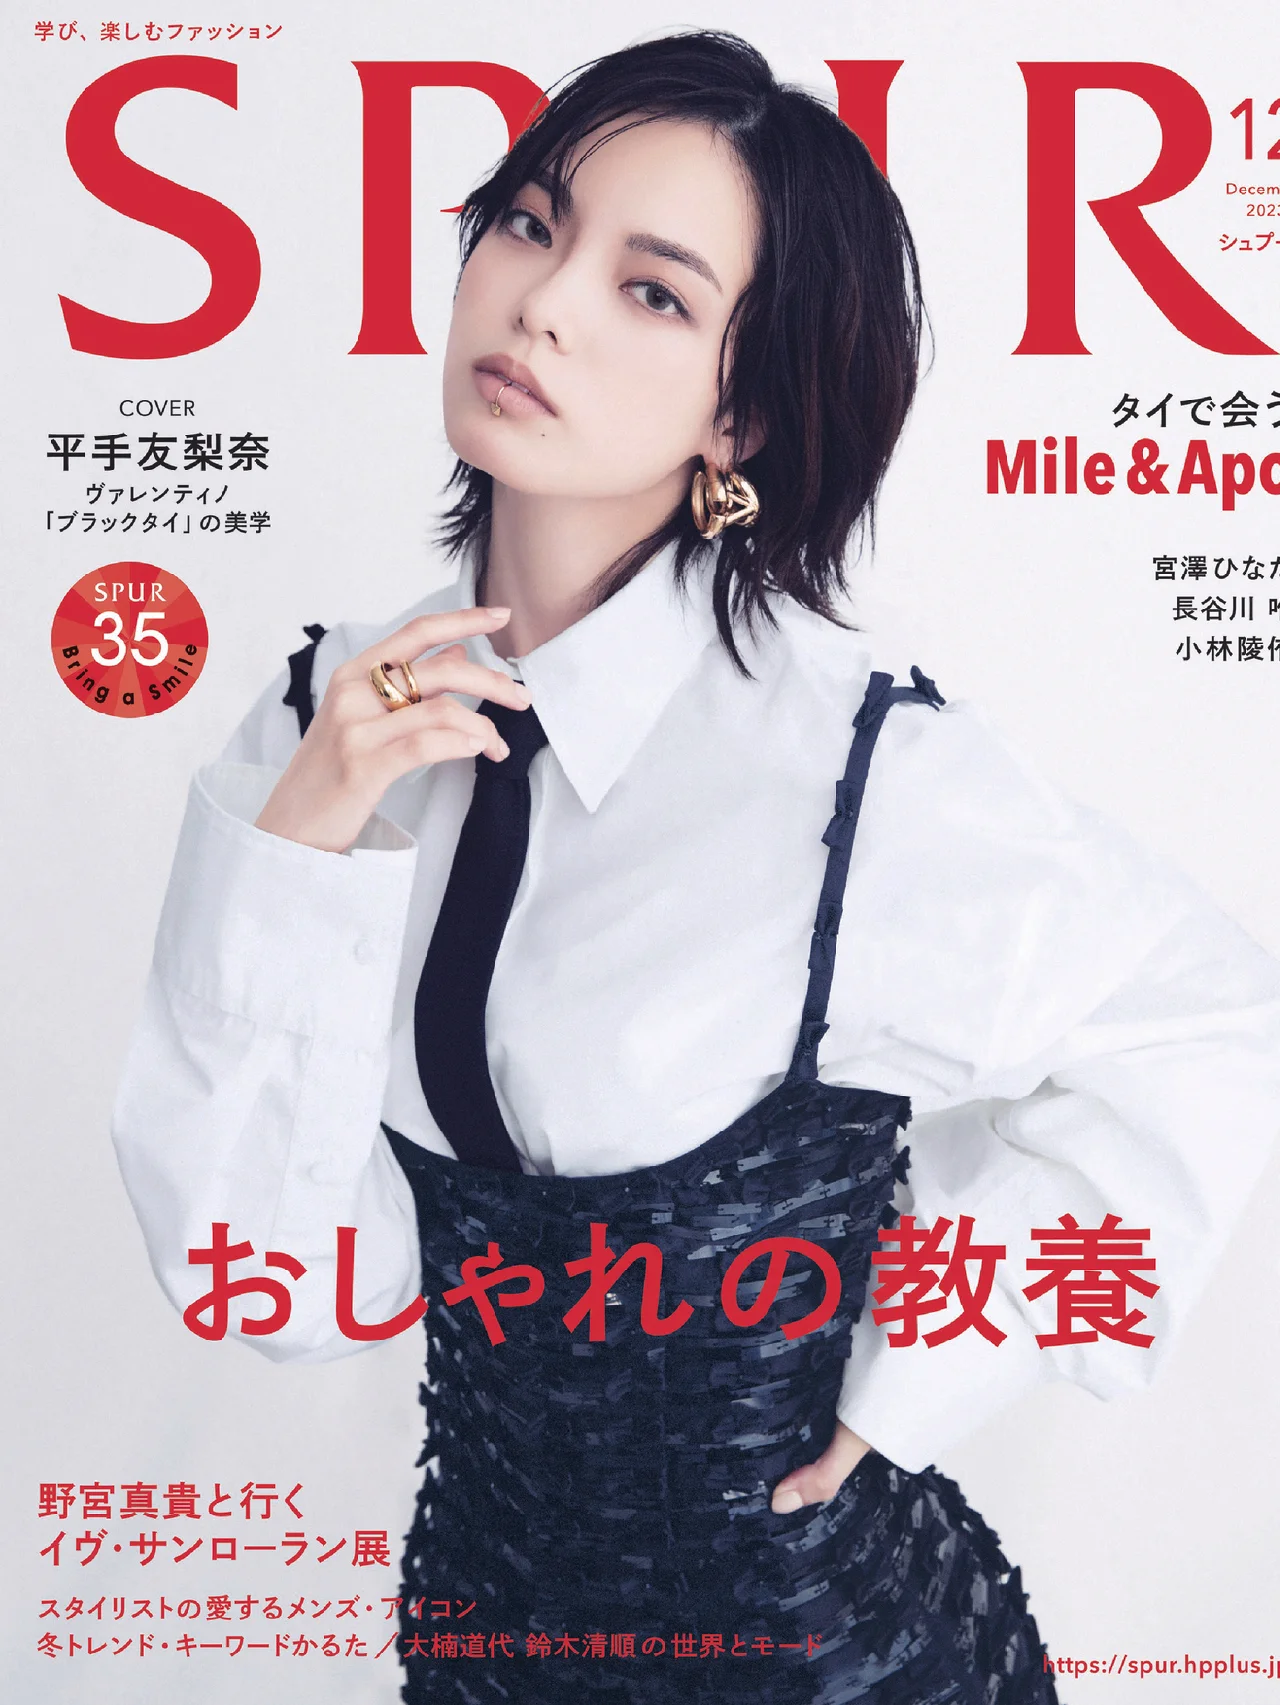 SPUR（シュプール） | 日本発信のファッショントレンド情報サイト